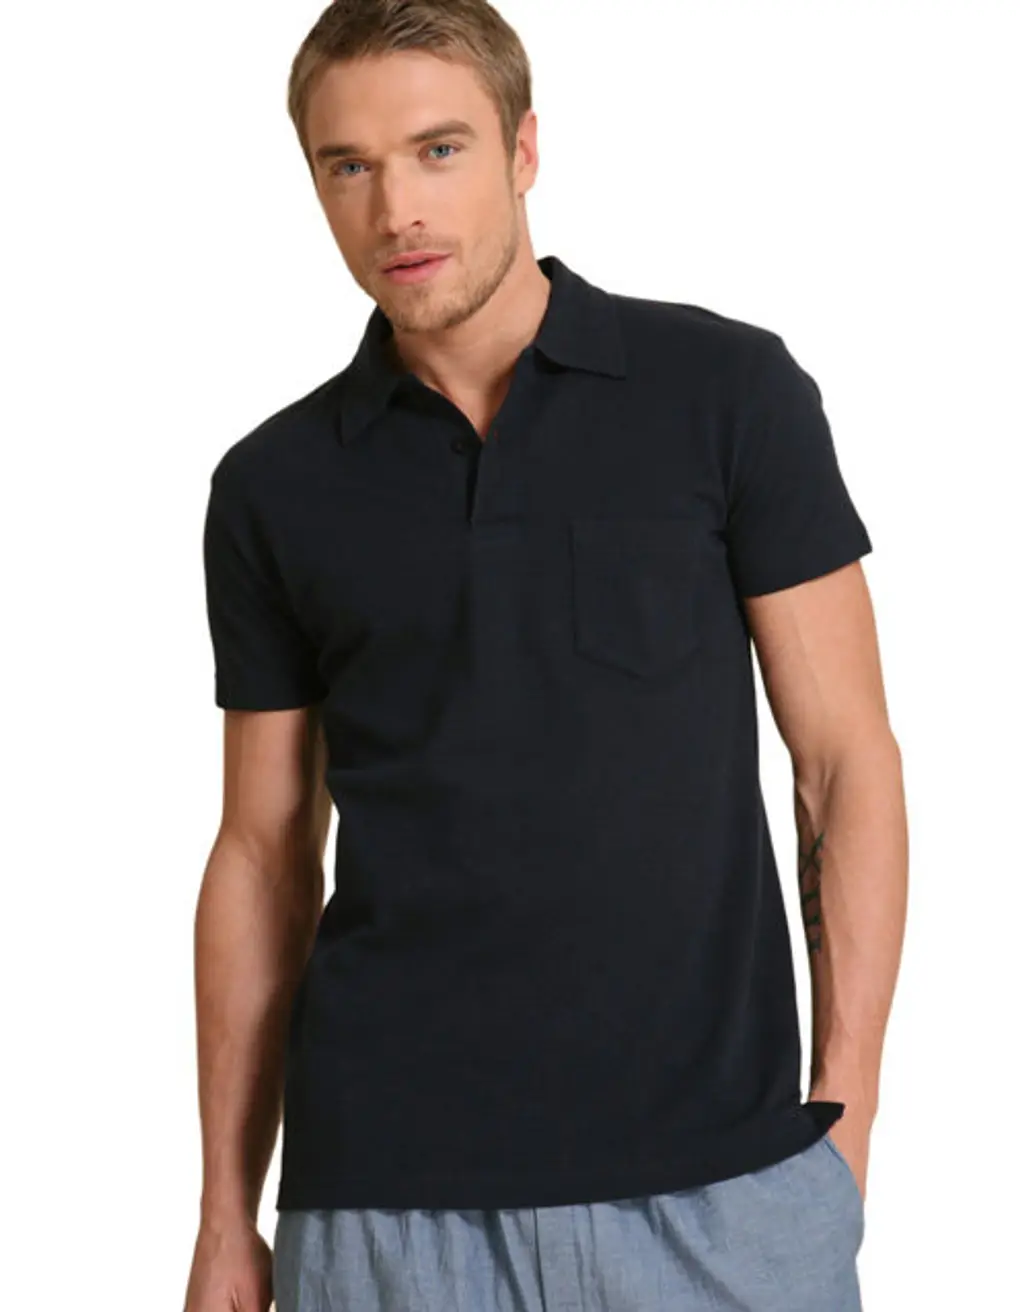 Sunspel Navy 007 Inspired Polo Shirt